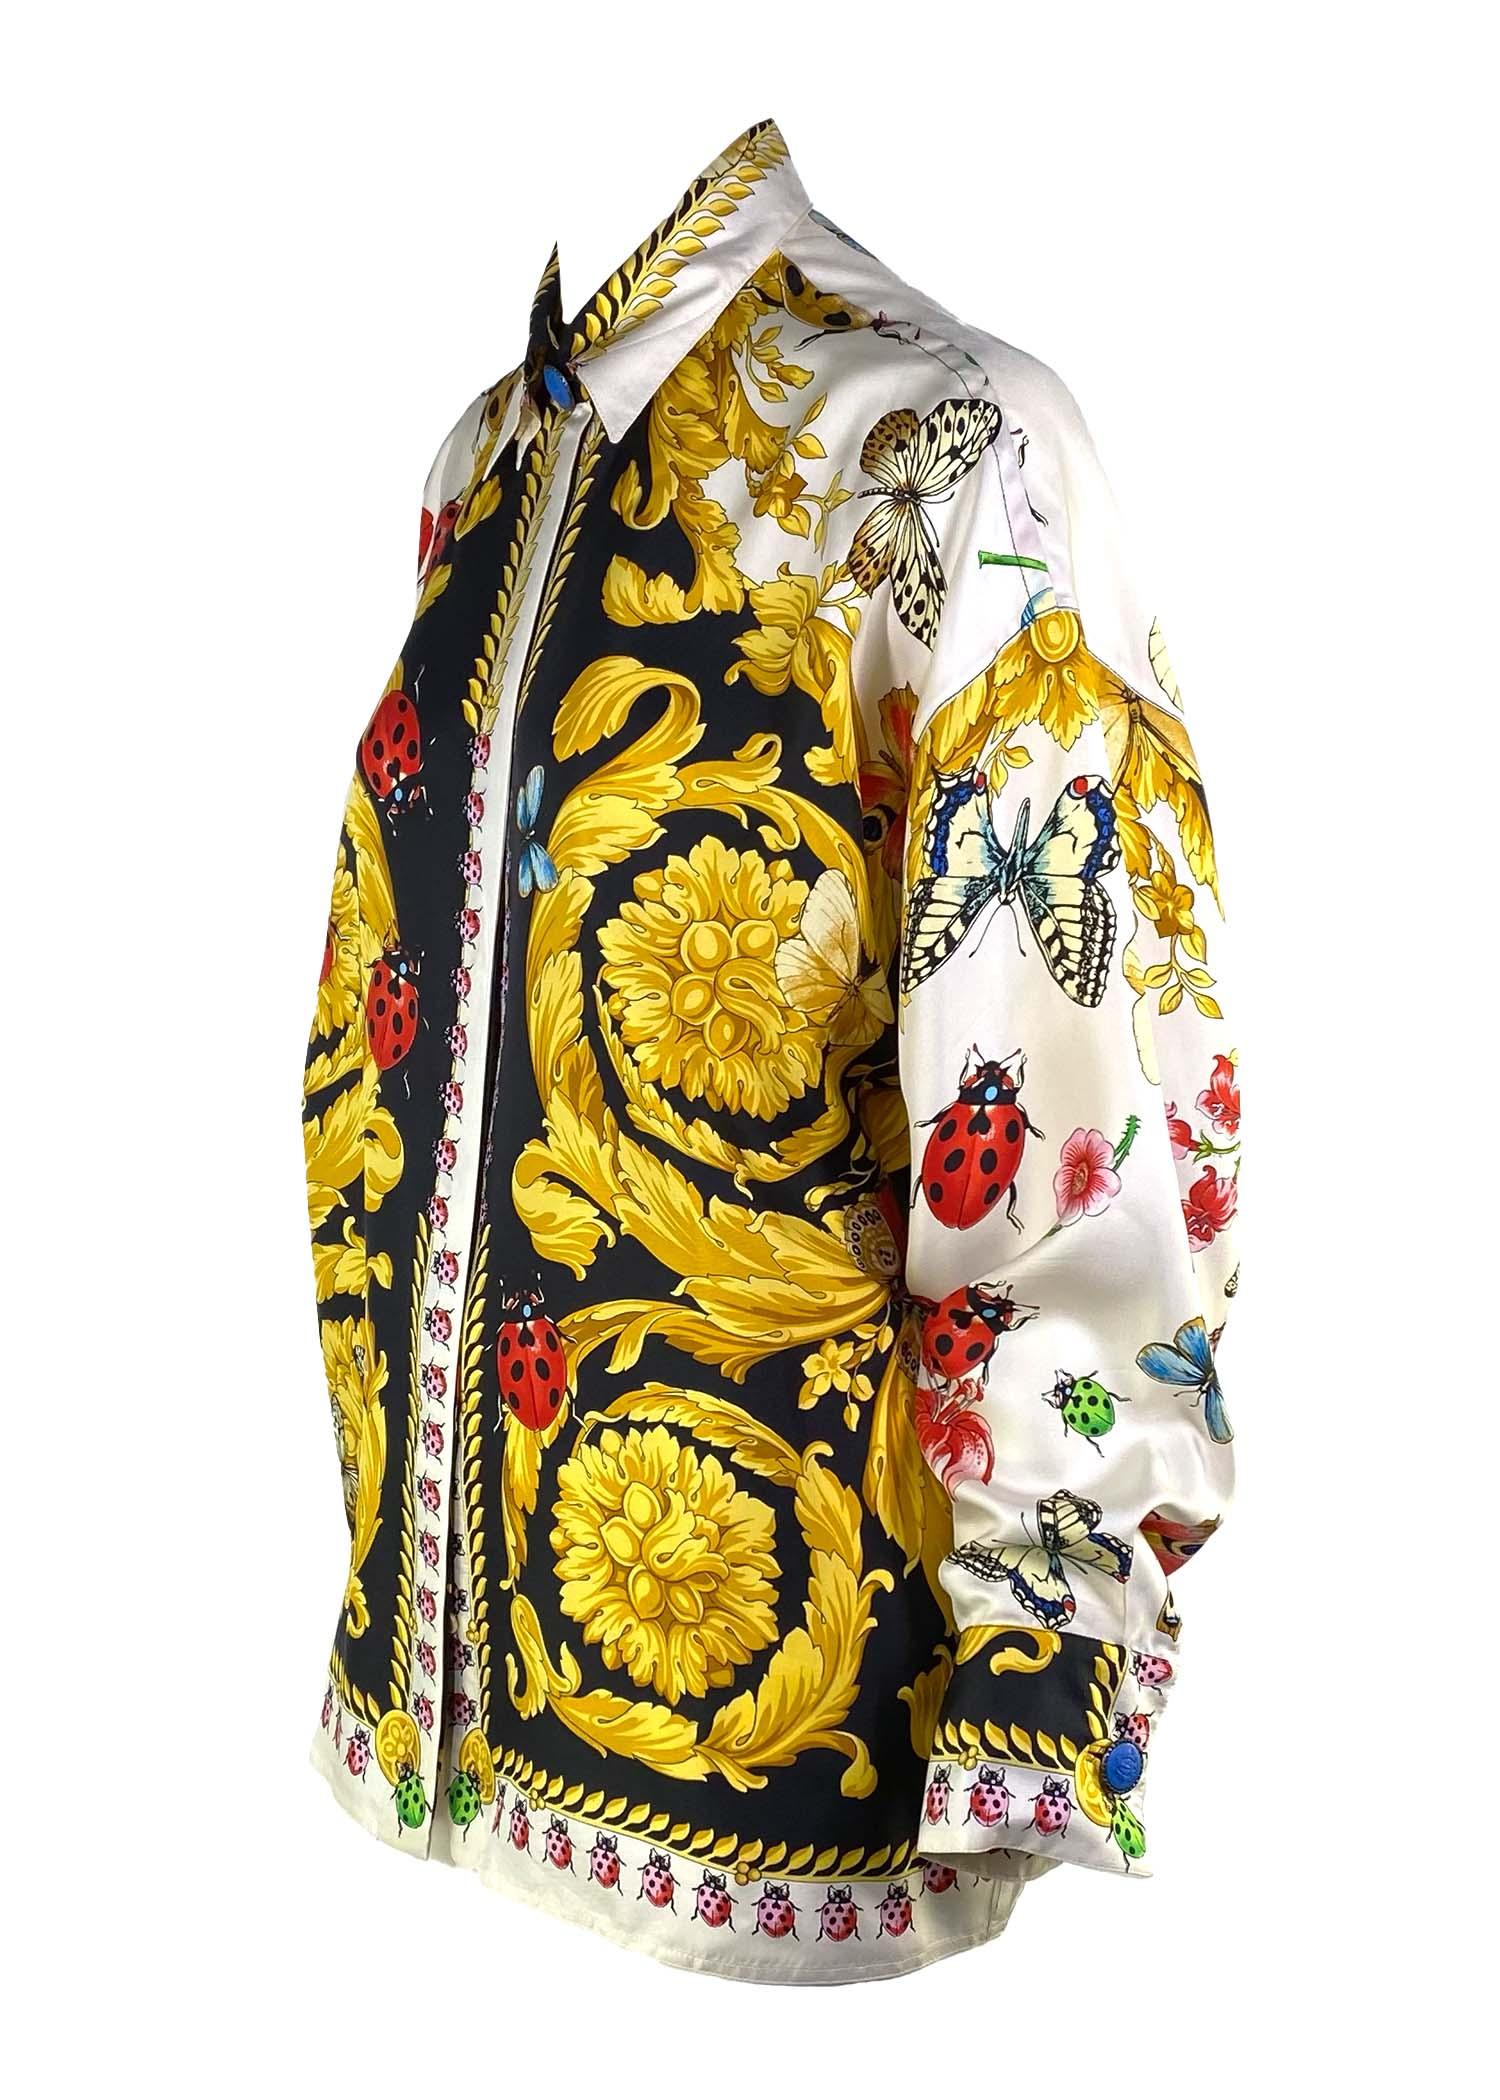 Wir präsentieren ein atemberaubendes Gianni Versace Couture Hemd aus Seide mit Knopfleiste, entworfen von Gianni Versace. Dieses Hemd besteht vollständig aus bedruckter Seide und ist mit dem ikonischen Barockmuster und dem